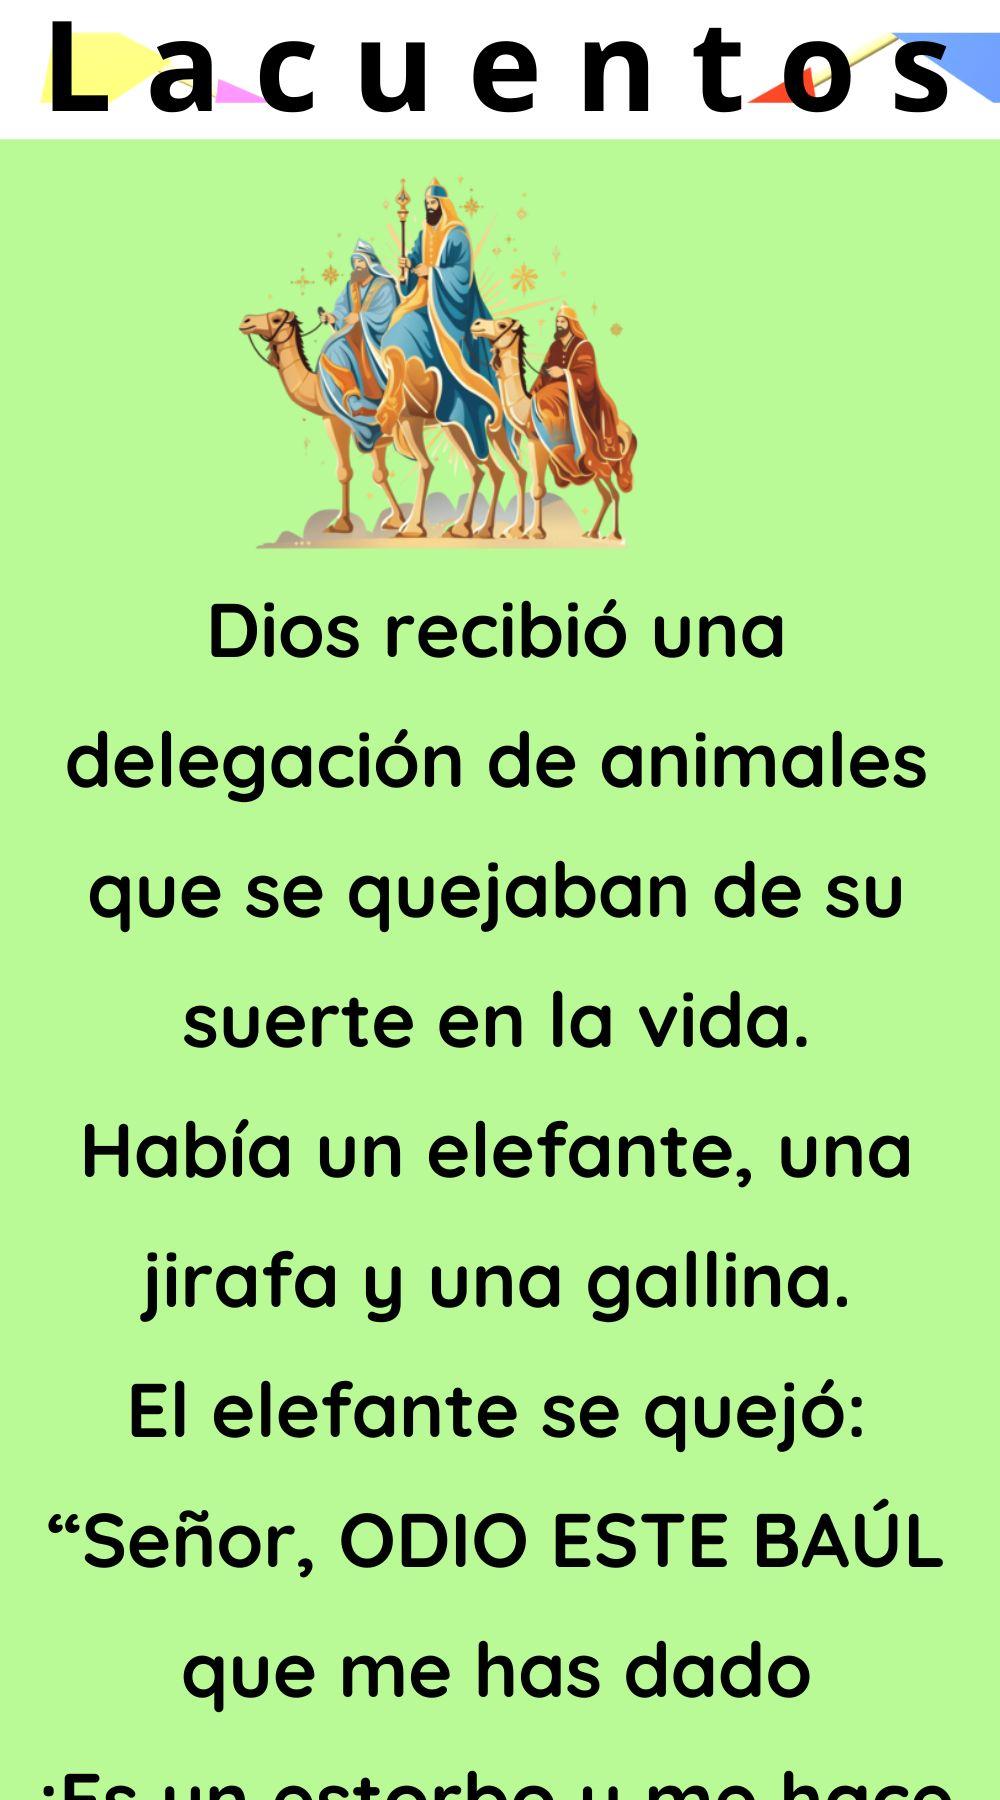 Dios recibió una delegación de animales